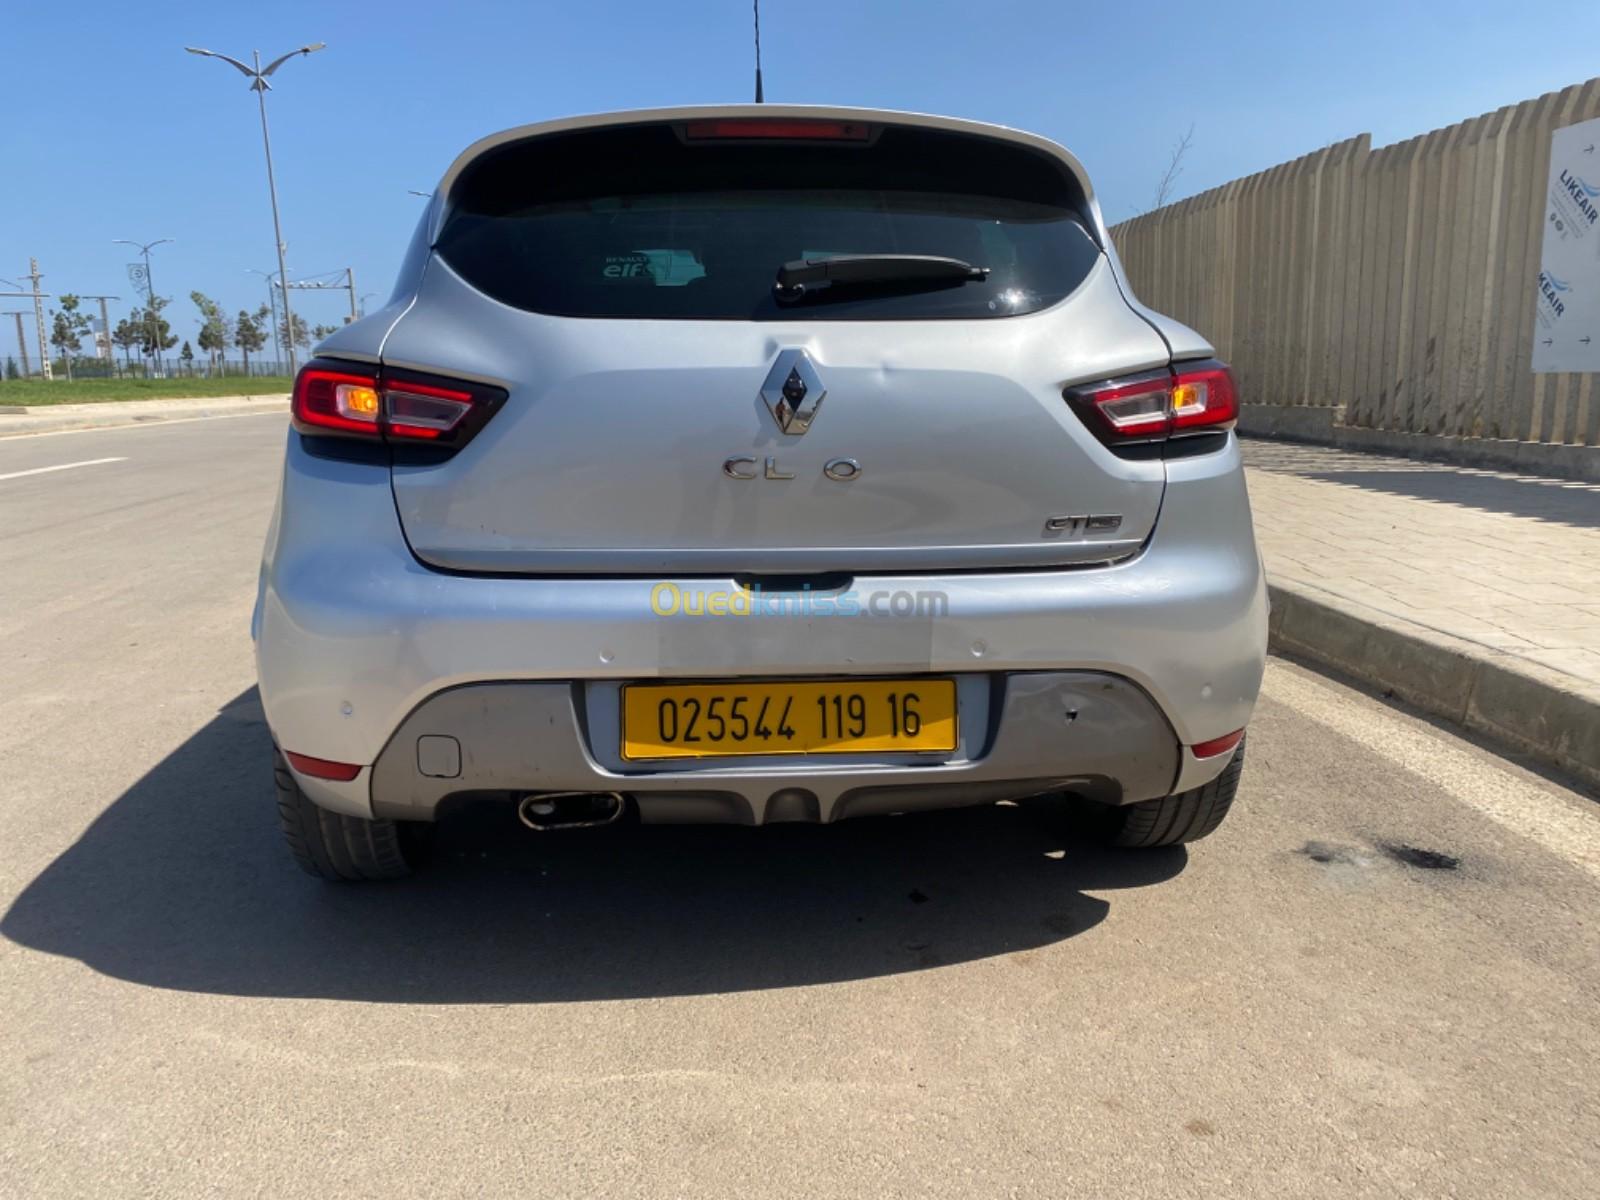 Renault Clio 4 2019 Gt line plus - Alger Algeria